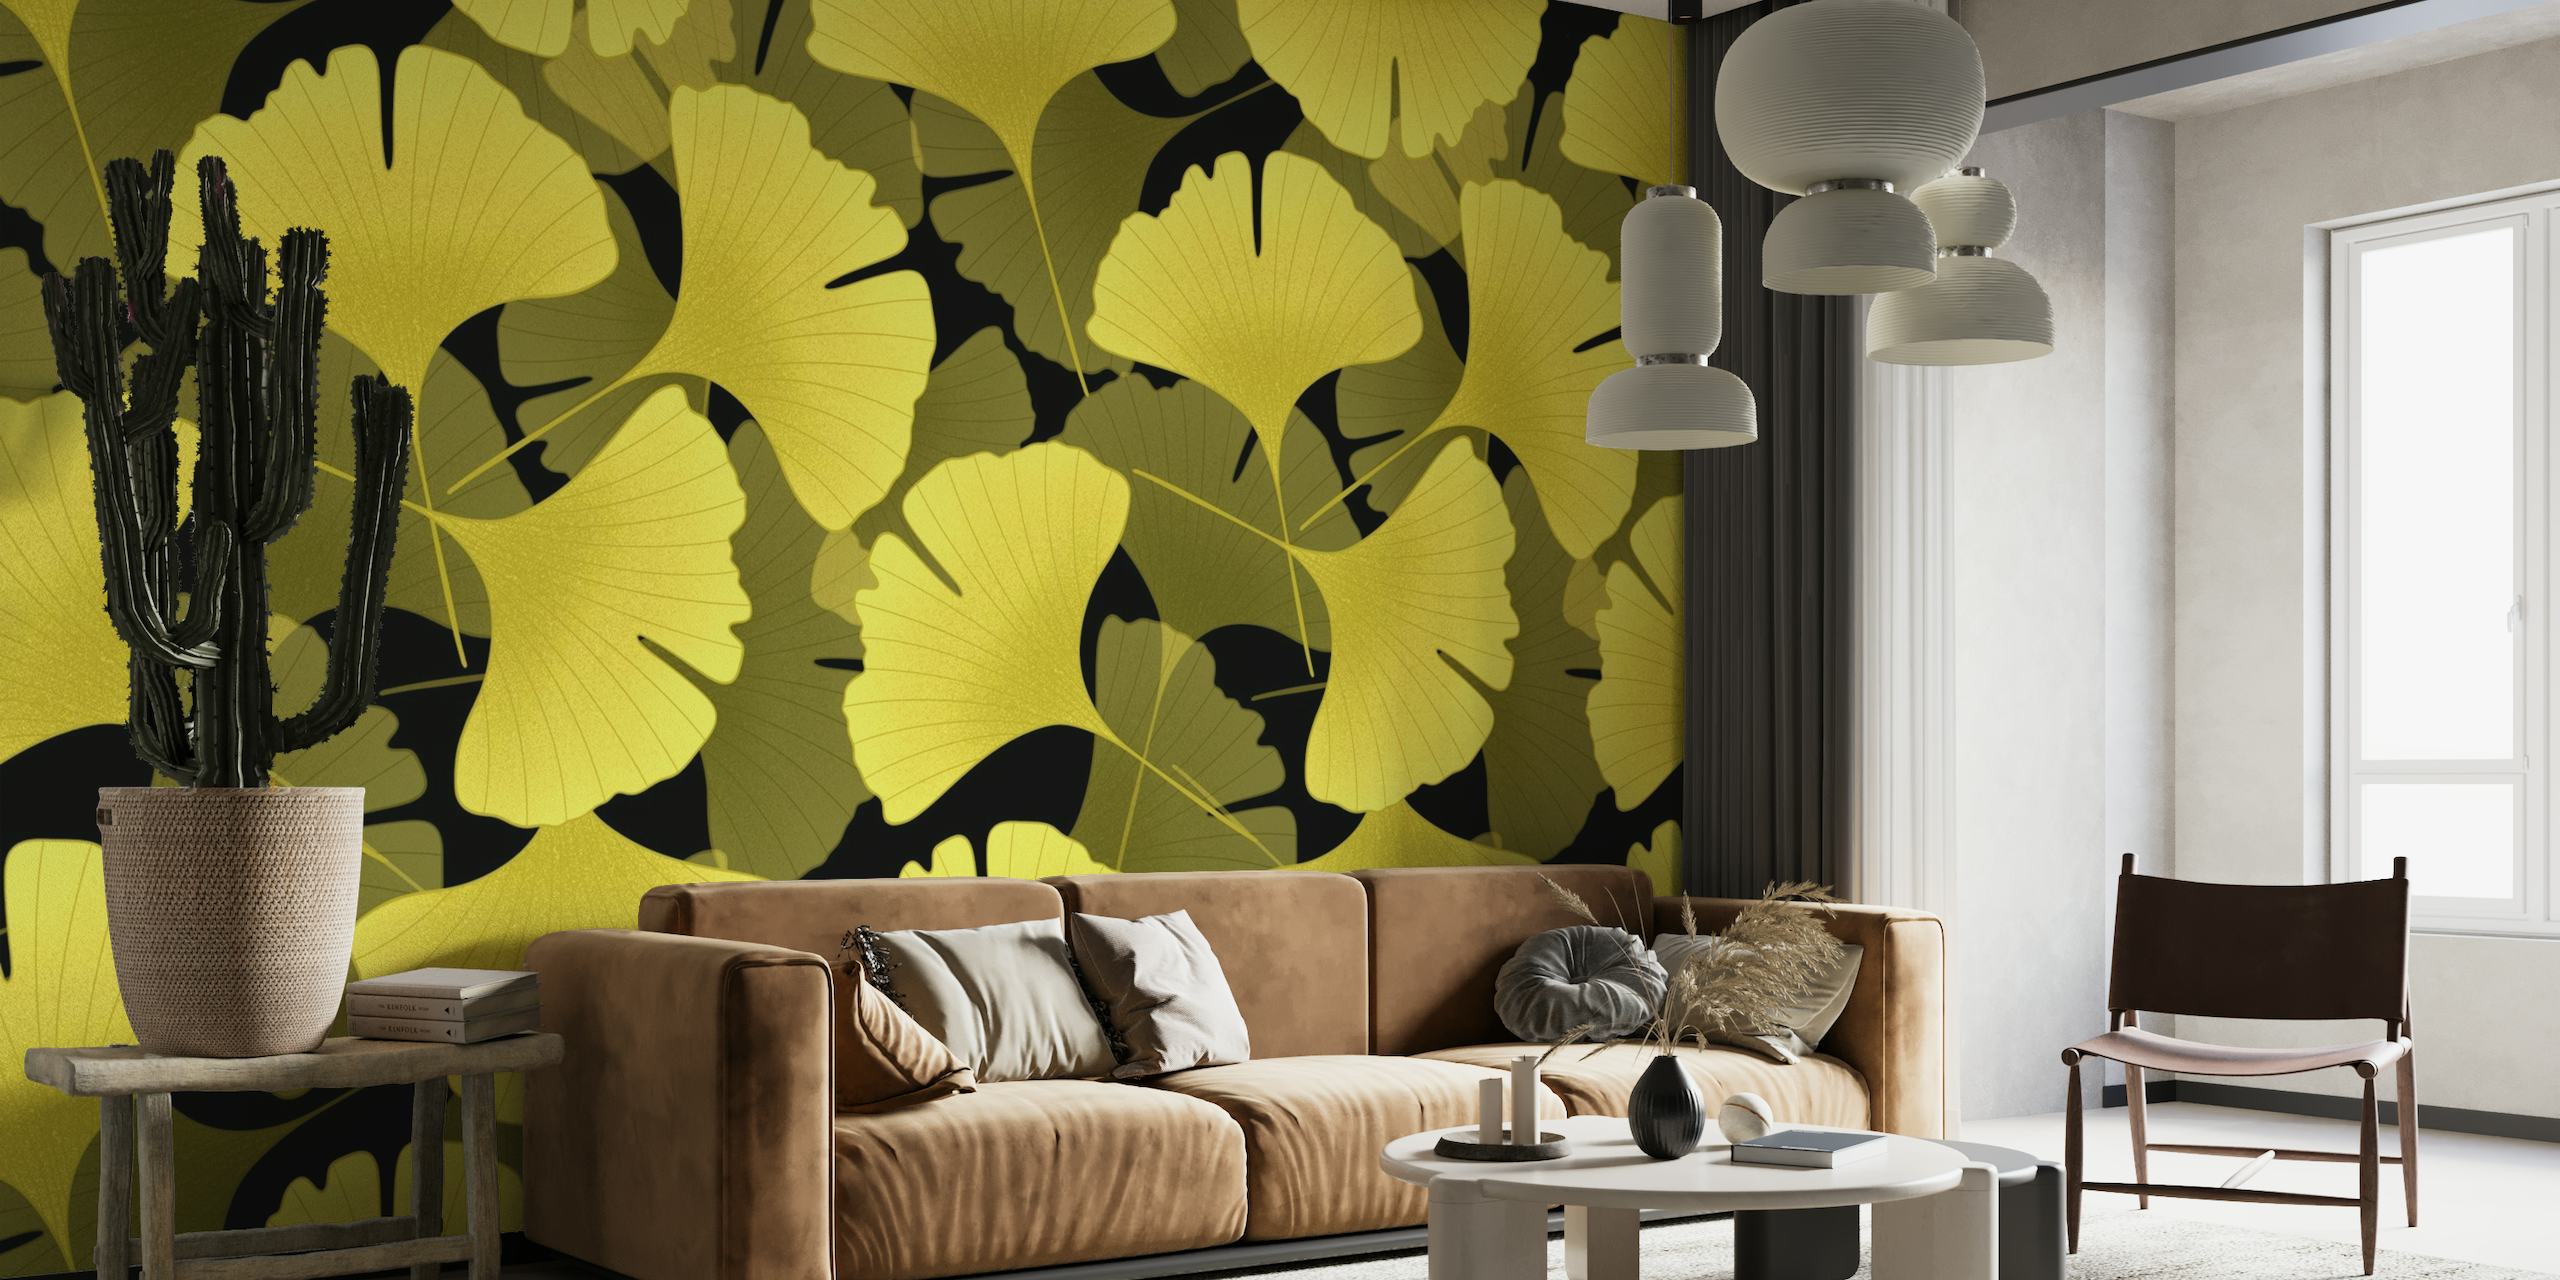 Ginkgo Biloba bladeren patroon muurschildering met goudgele bladeren op een donkere achtergrond